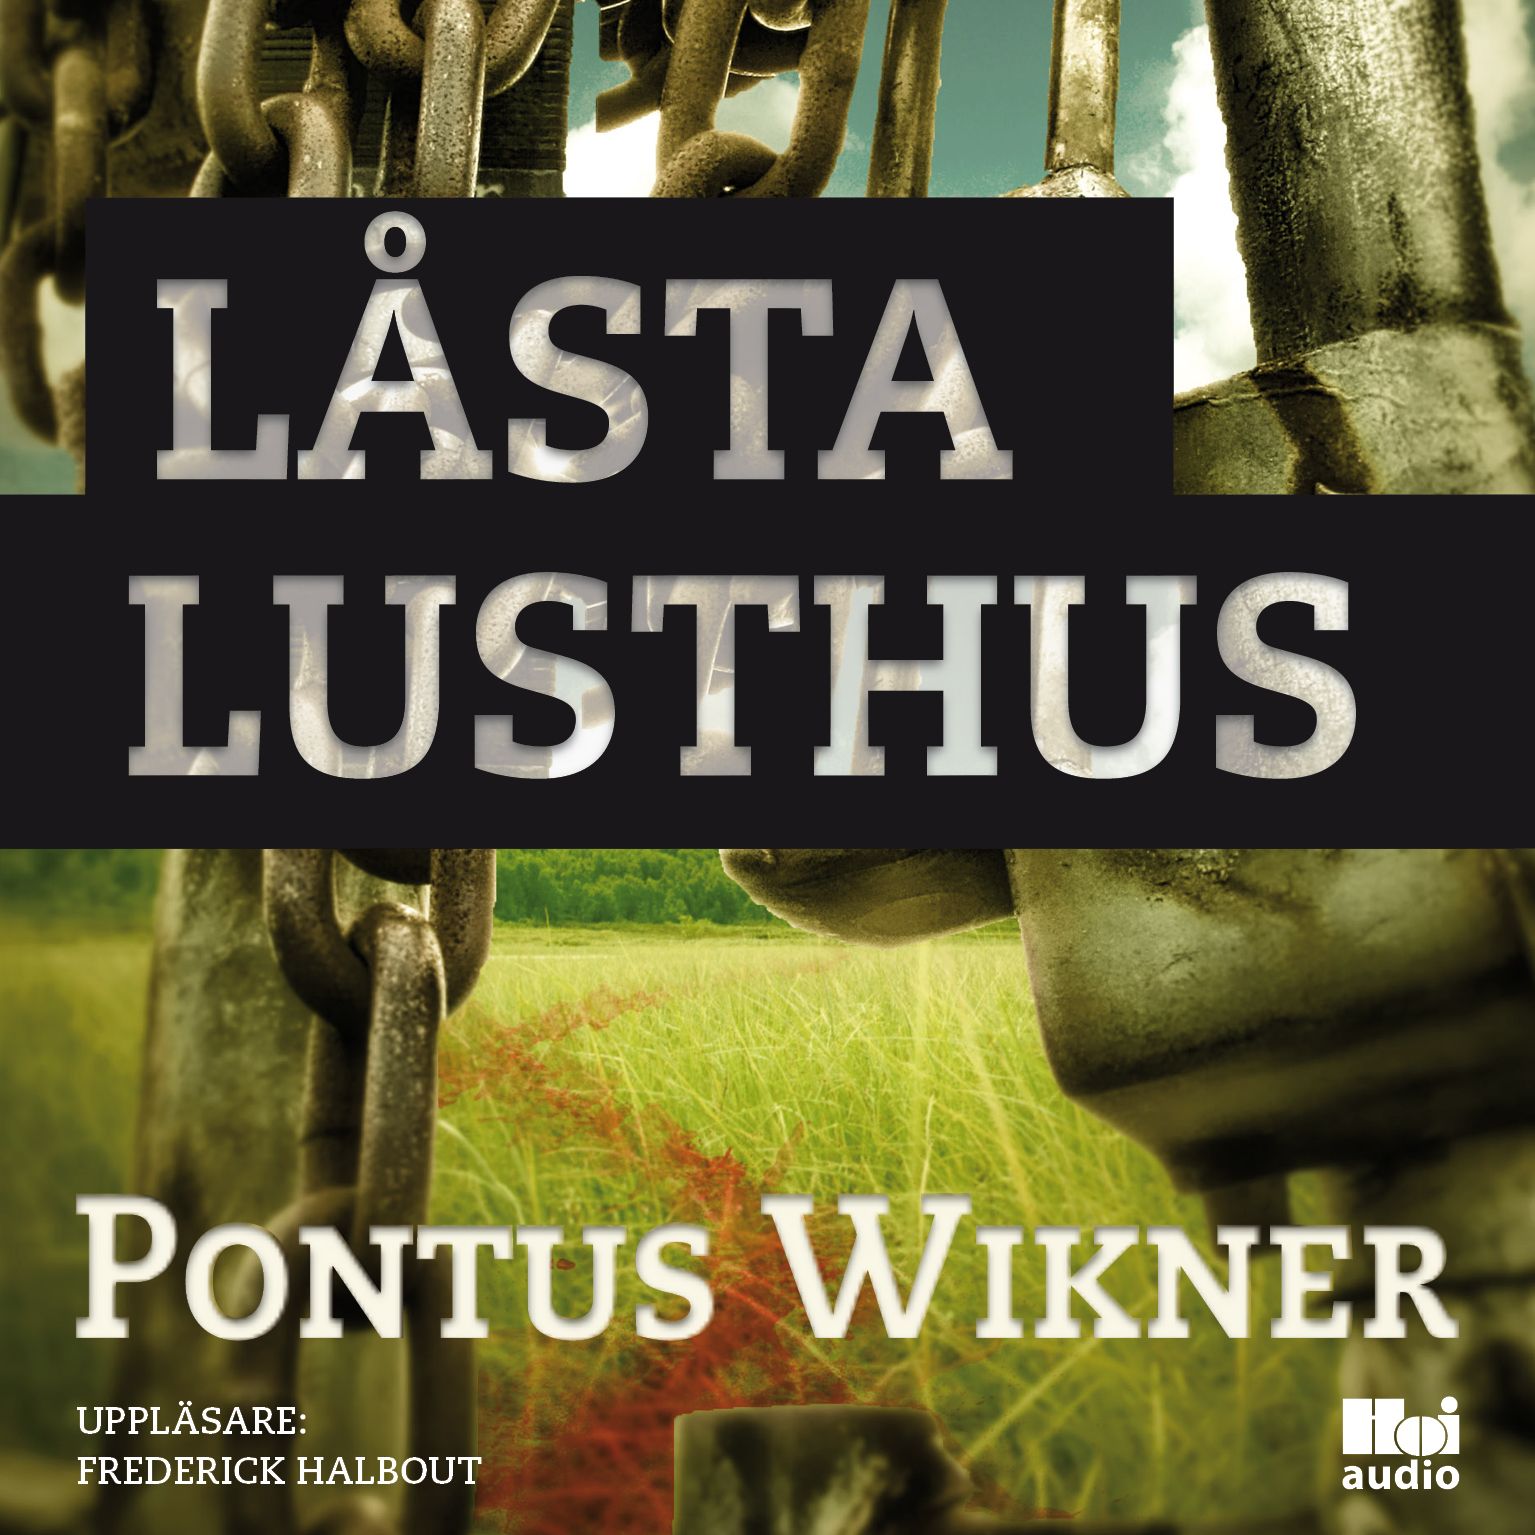 Låsta lusthus, ljudbok av Pontus Wikner